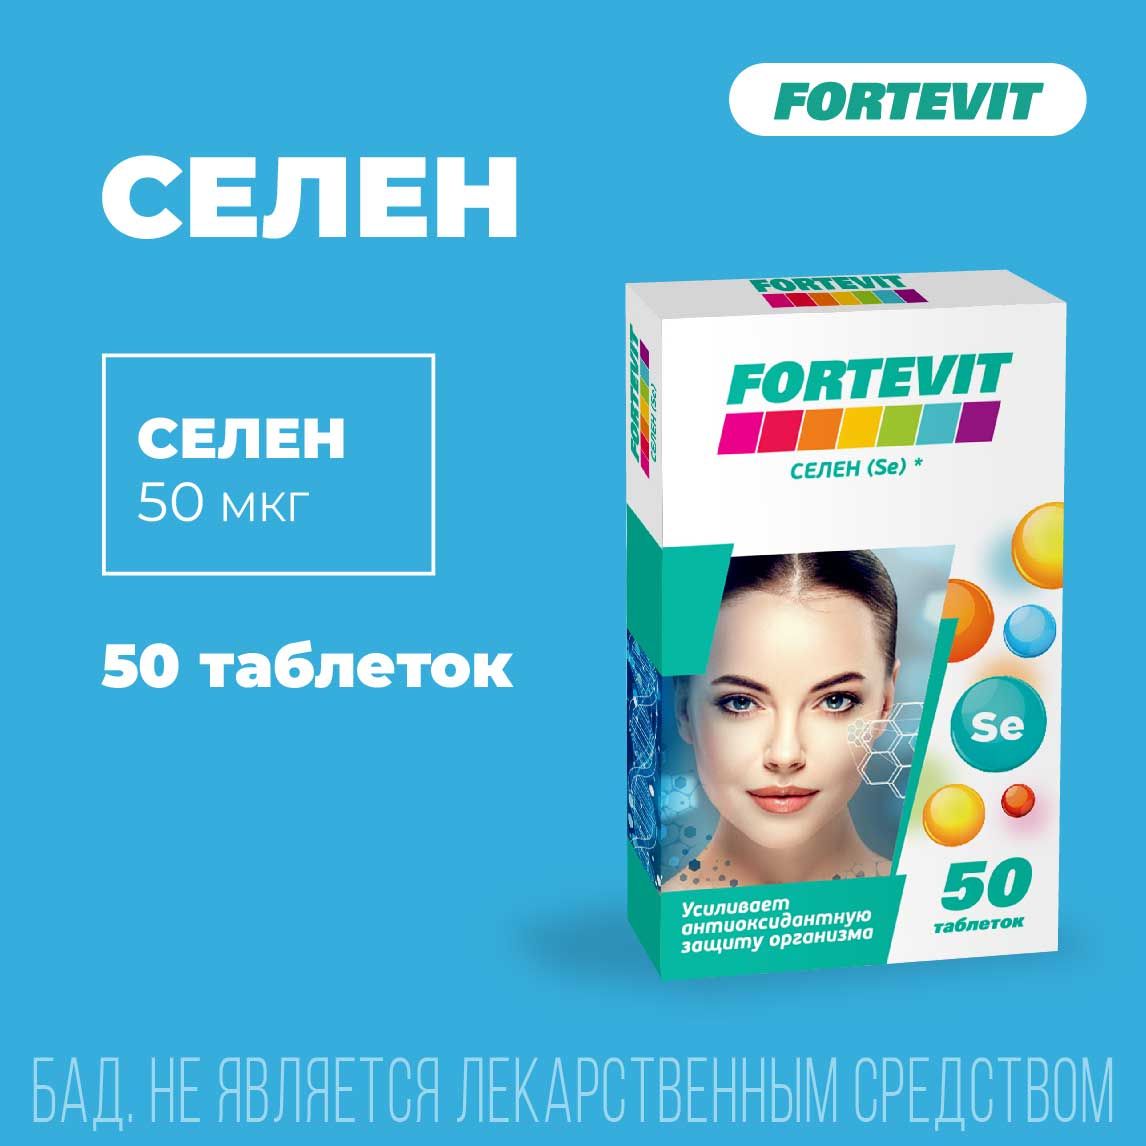 Фортевит таблетки селен 50 шт.  по цене от 179 руб  .